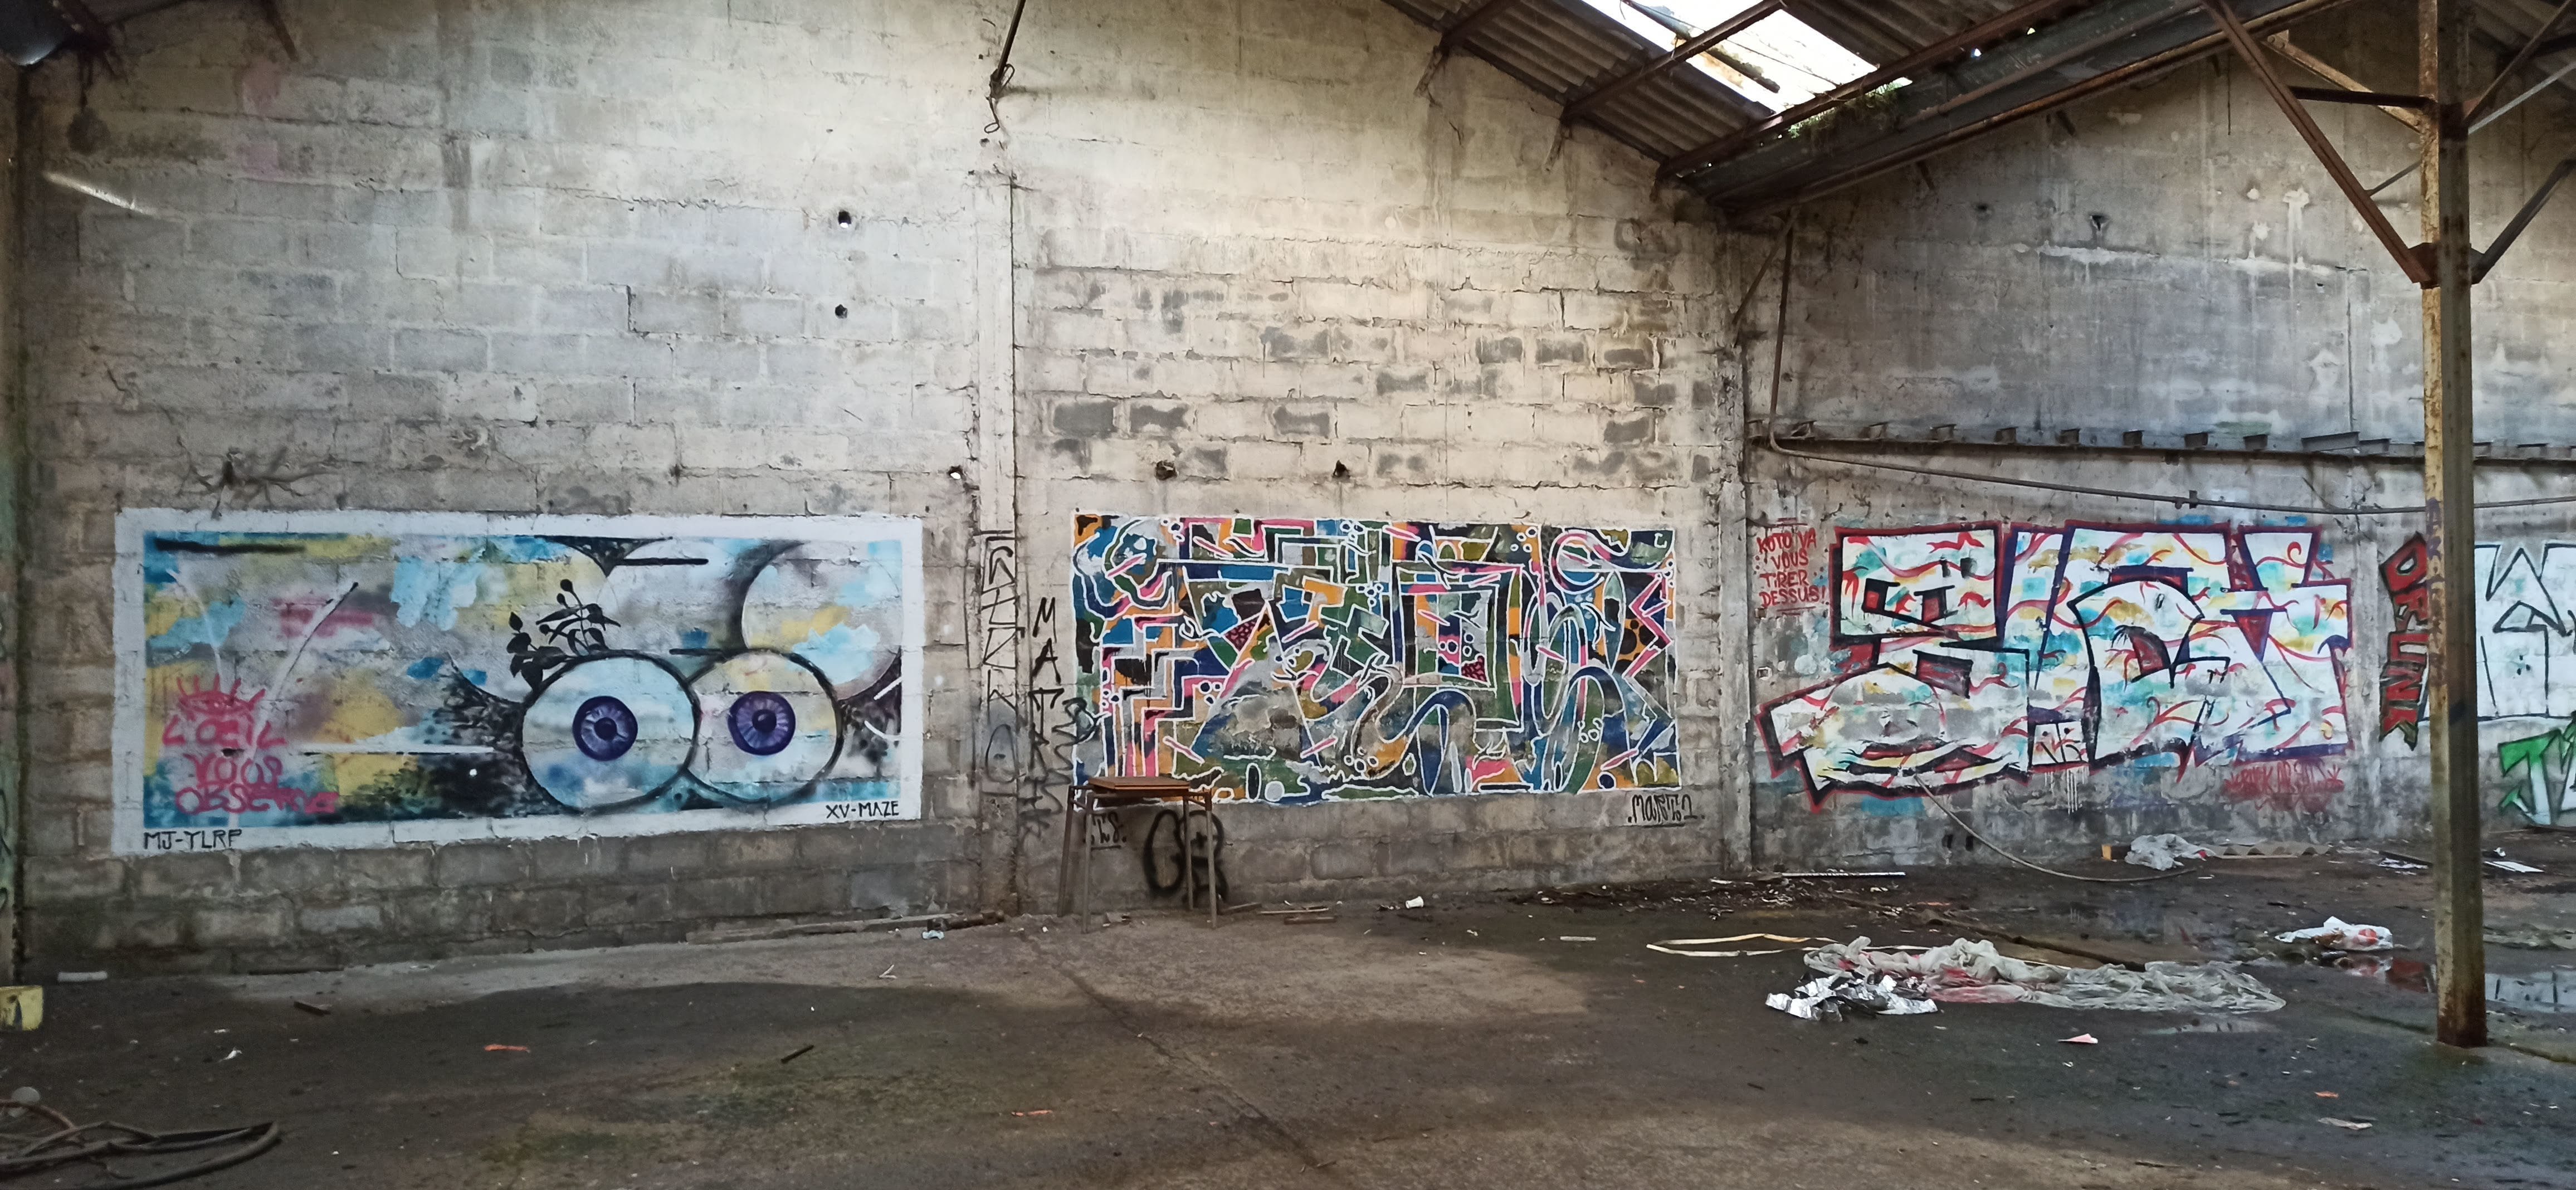 Graffiti 4834  capturé par Rabot à Lorient France